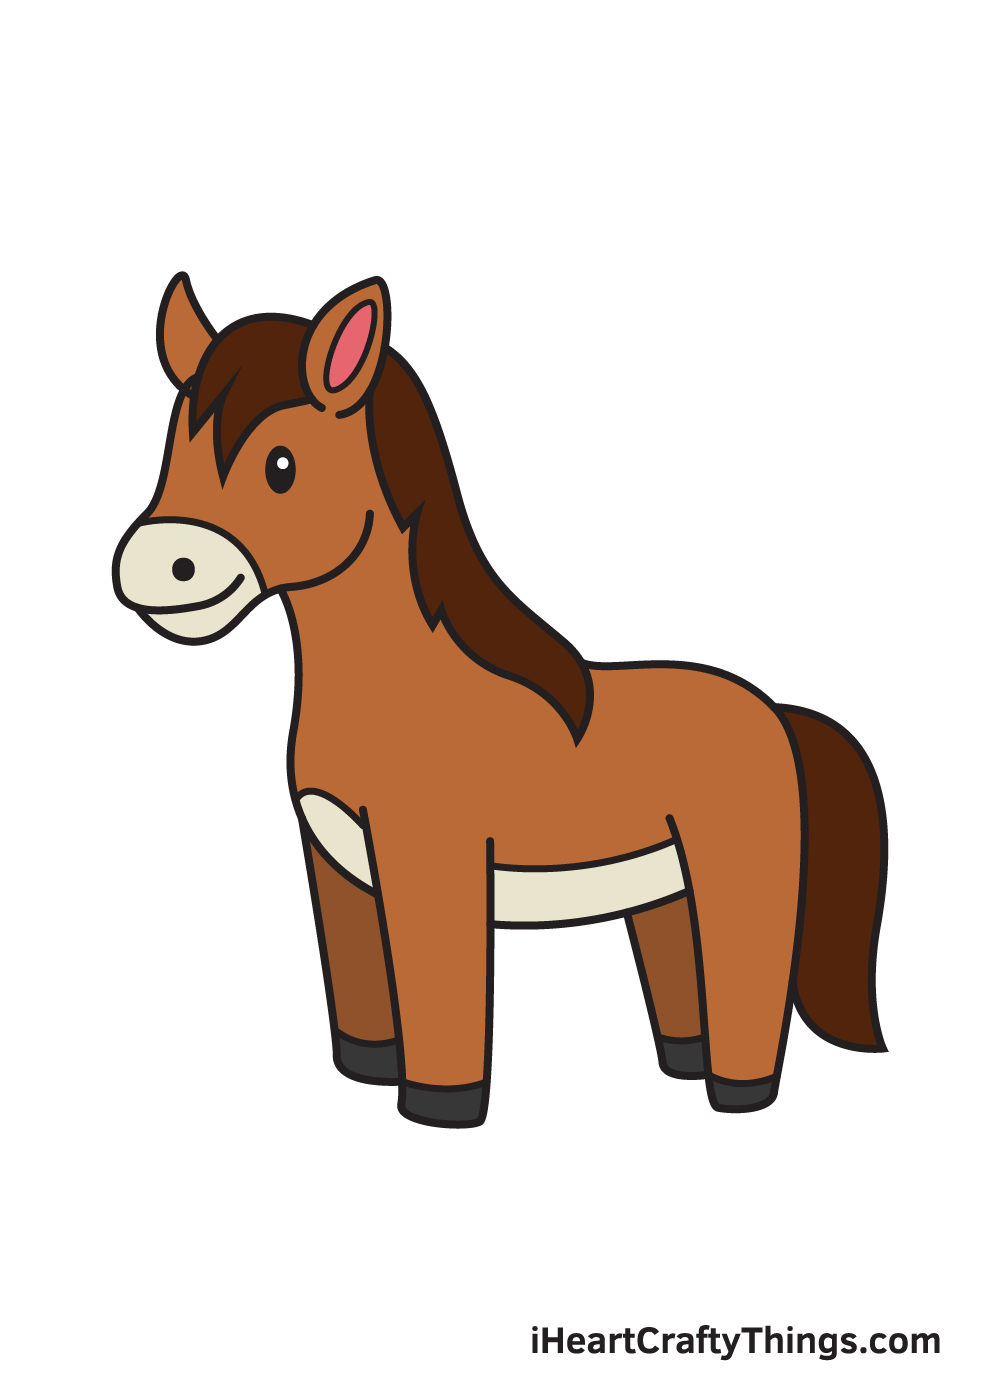 Tổng hợp hình vẽ con ngựa pony với nhiều mẫu đa dạng